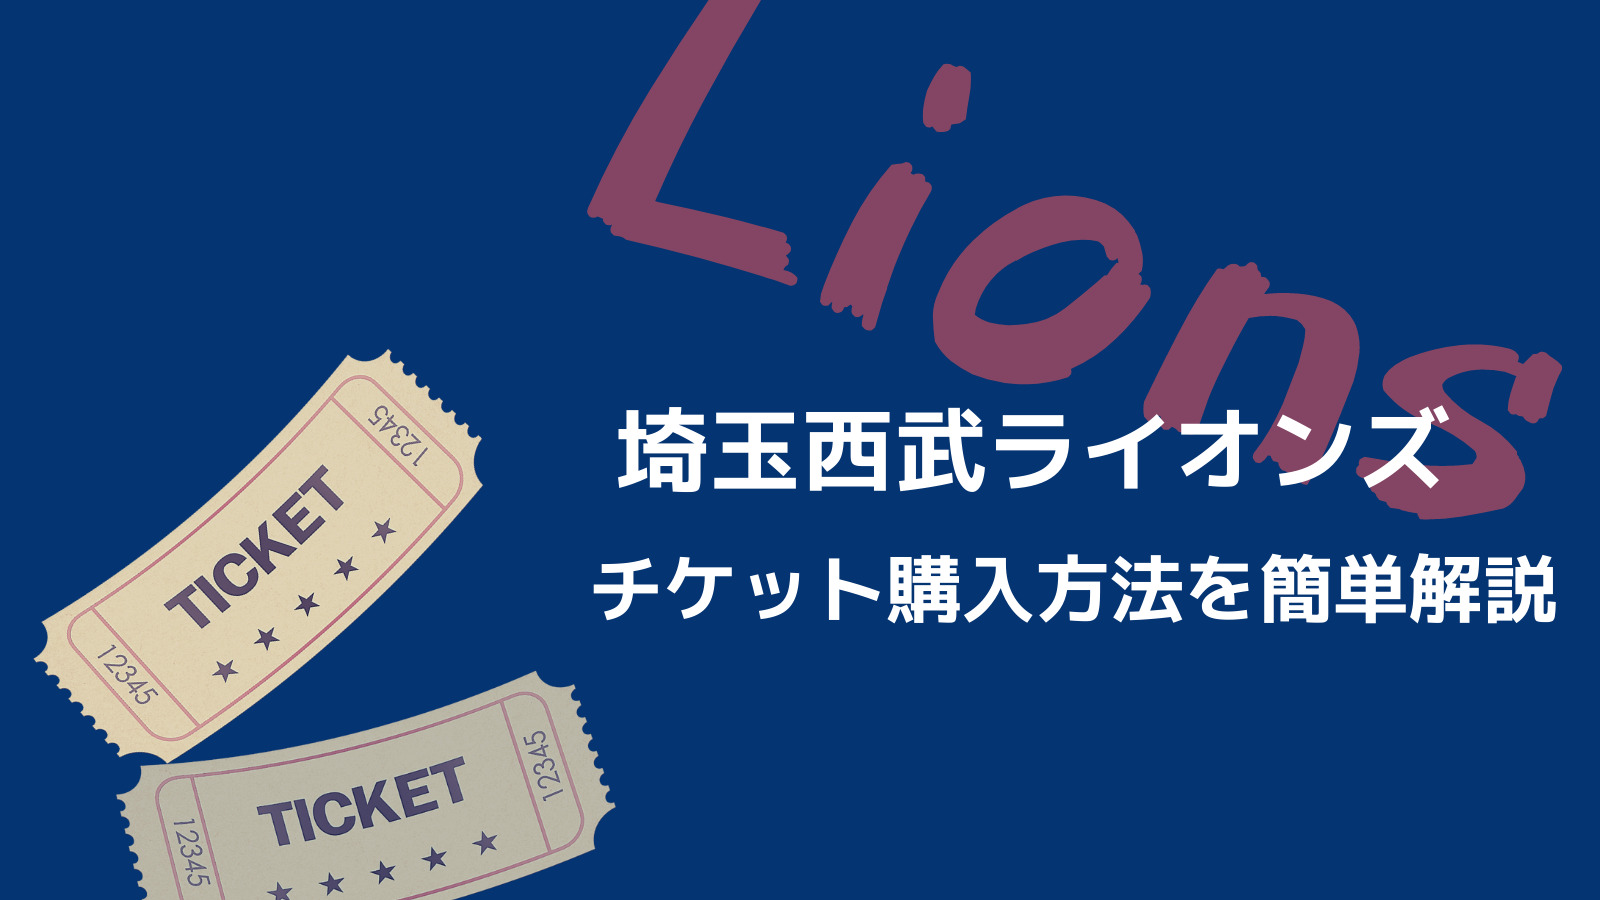 球団公式が便利 埼玉西武ライオンズのチケットを購入する方法 野球観戦の教科書